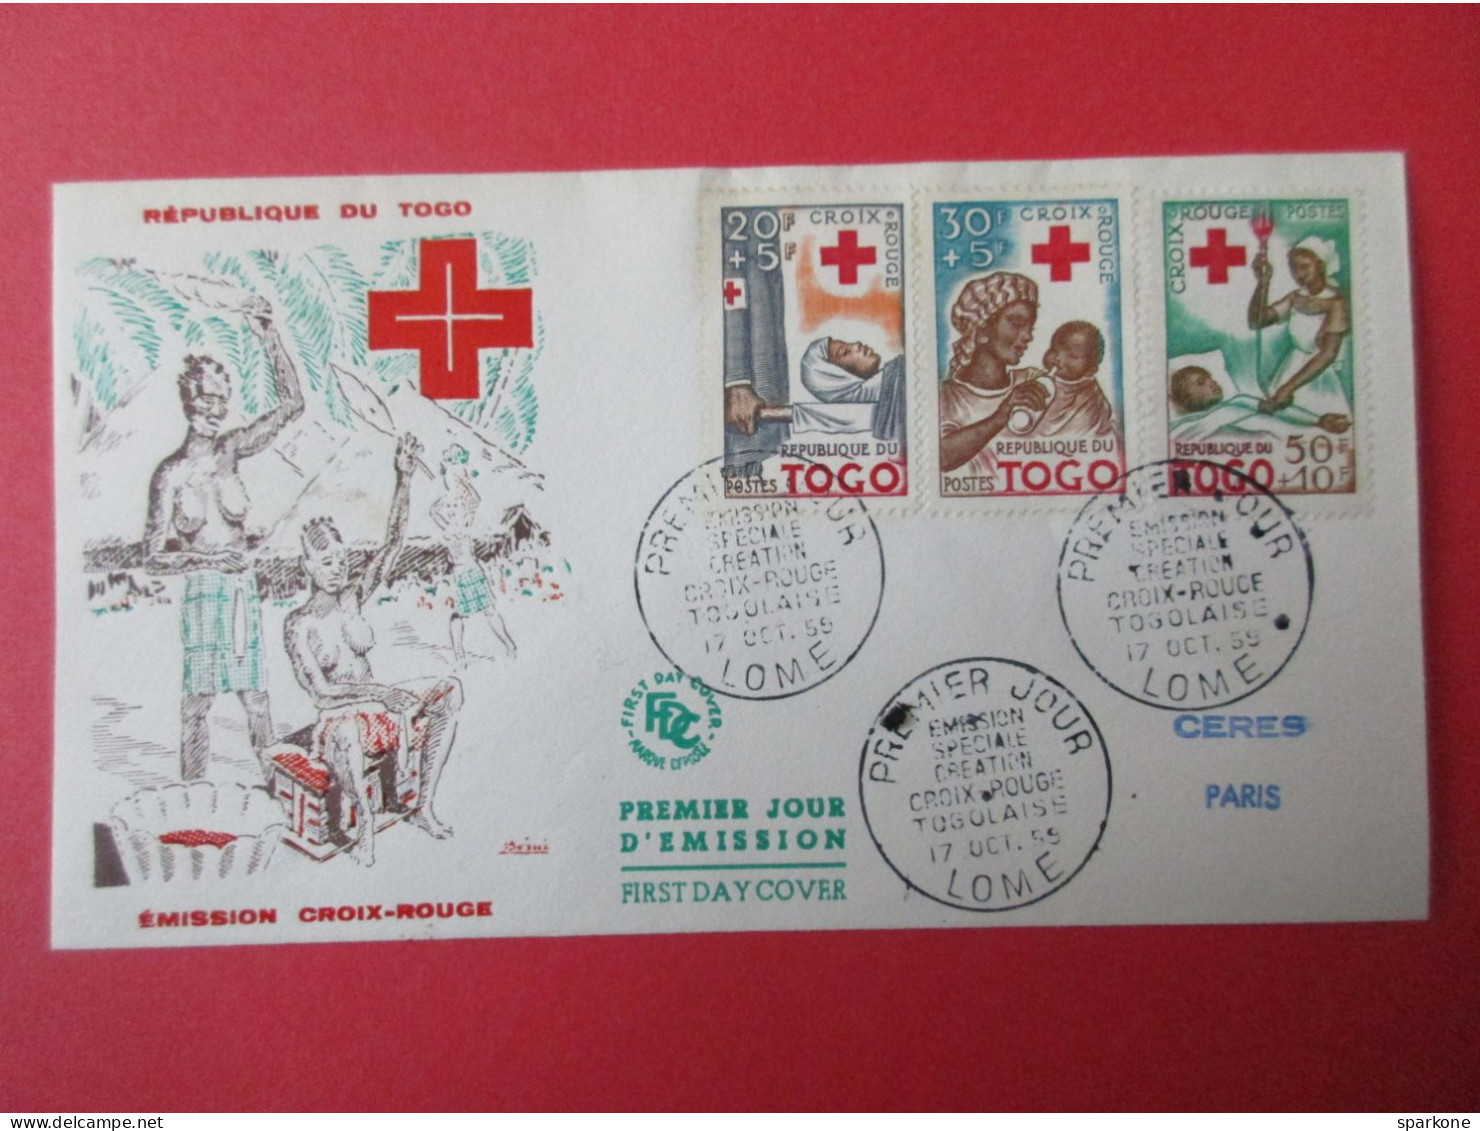 Marcophilie - Enveloppe - République Du Togo - Emission Croix-Rouge - 1° Jour 1955 - Covers & Documents